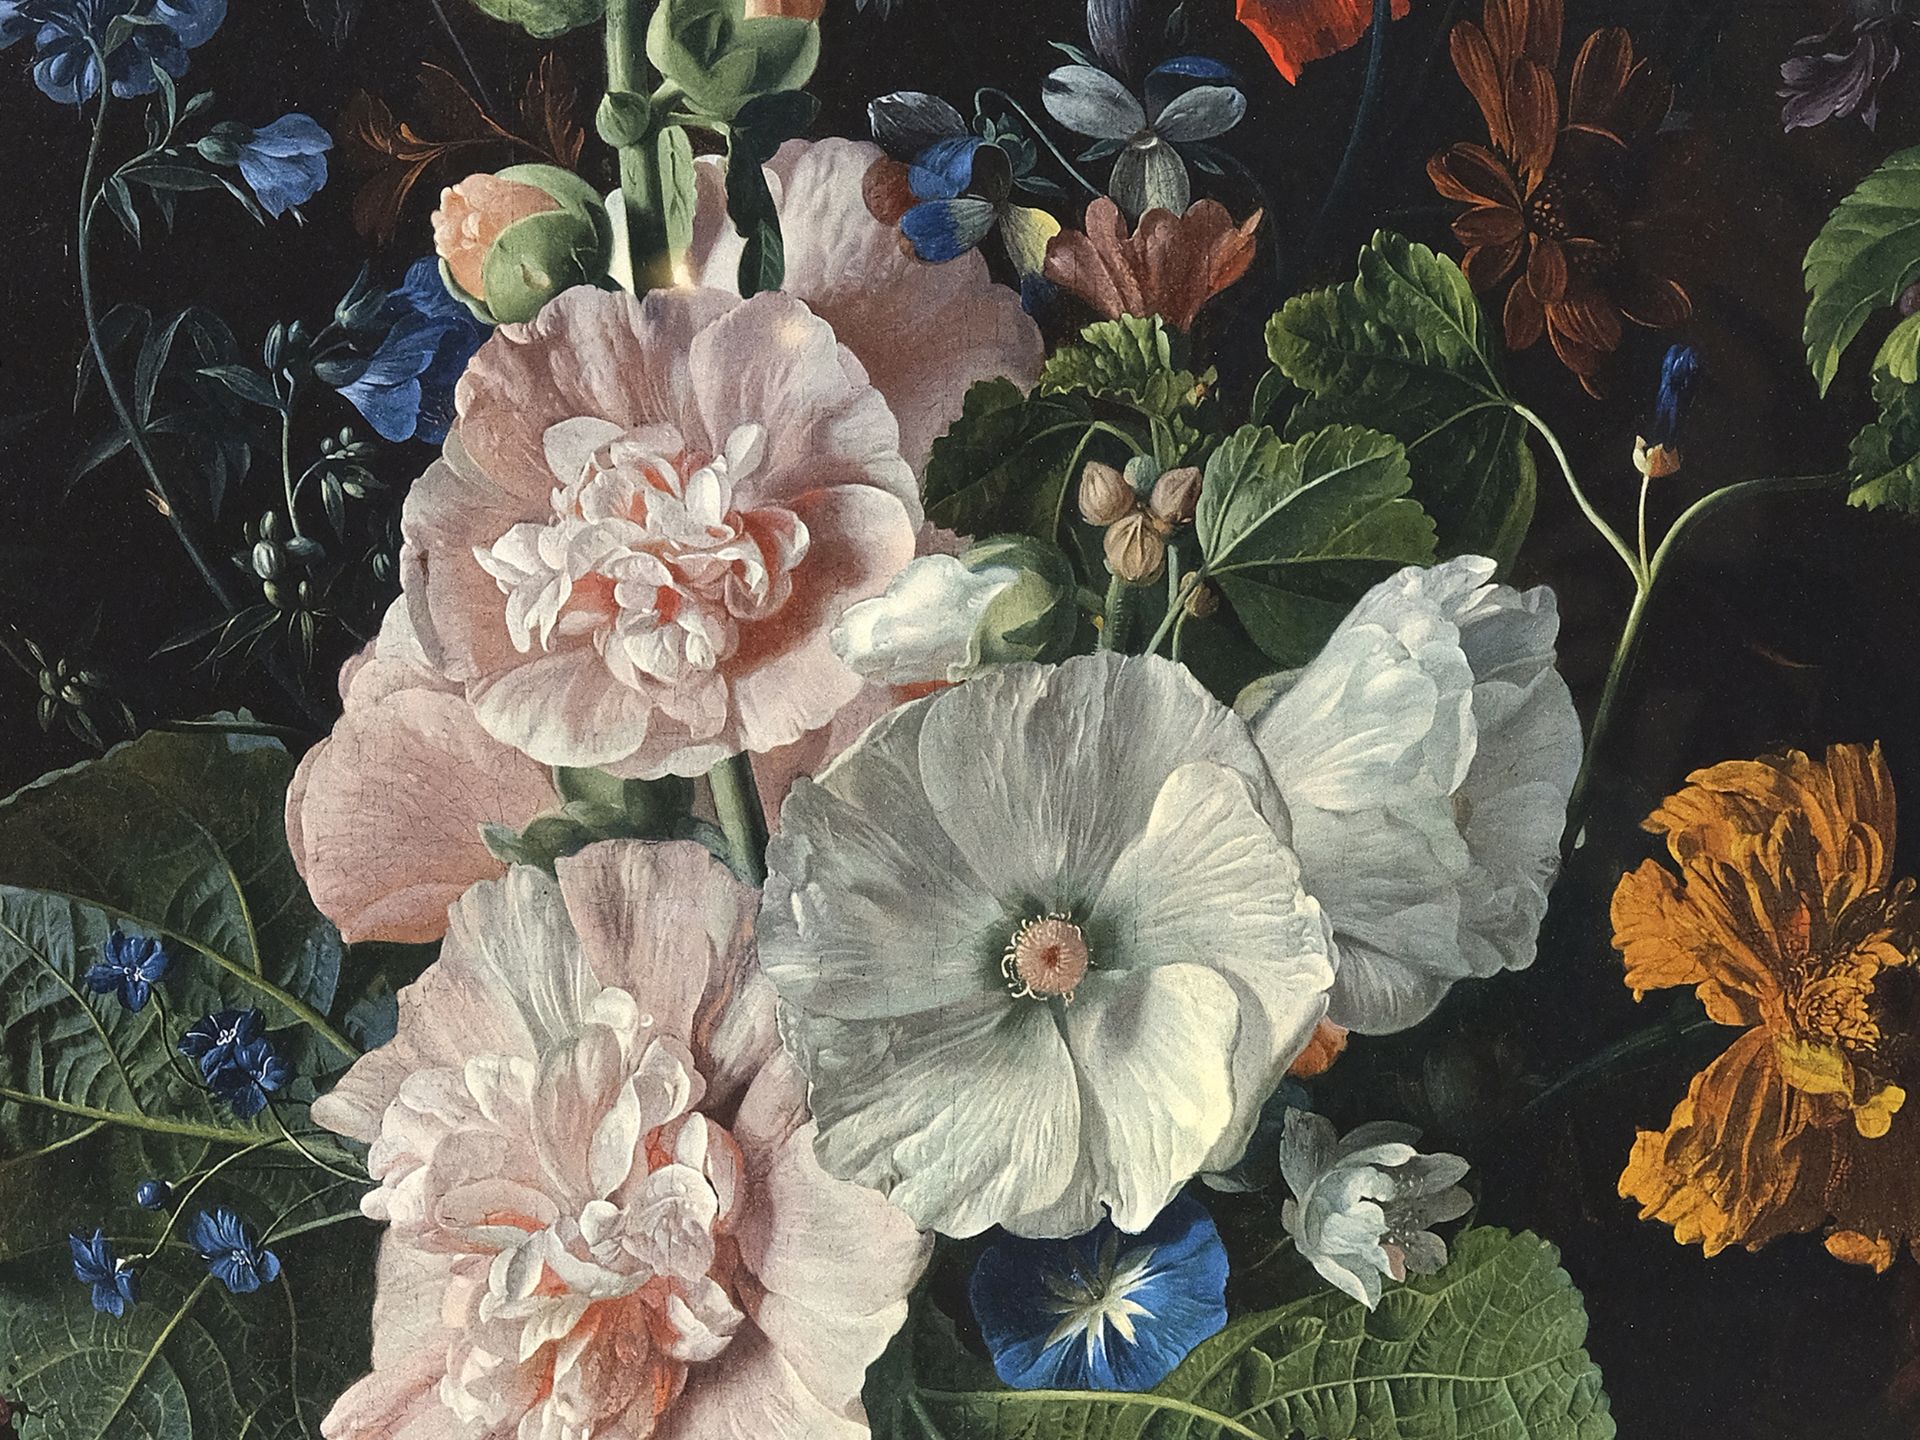 Unknown painter, Flower still life, around 1900 - Image 3 of 5